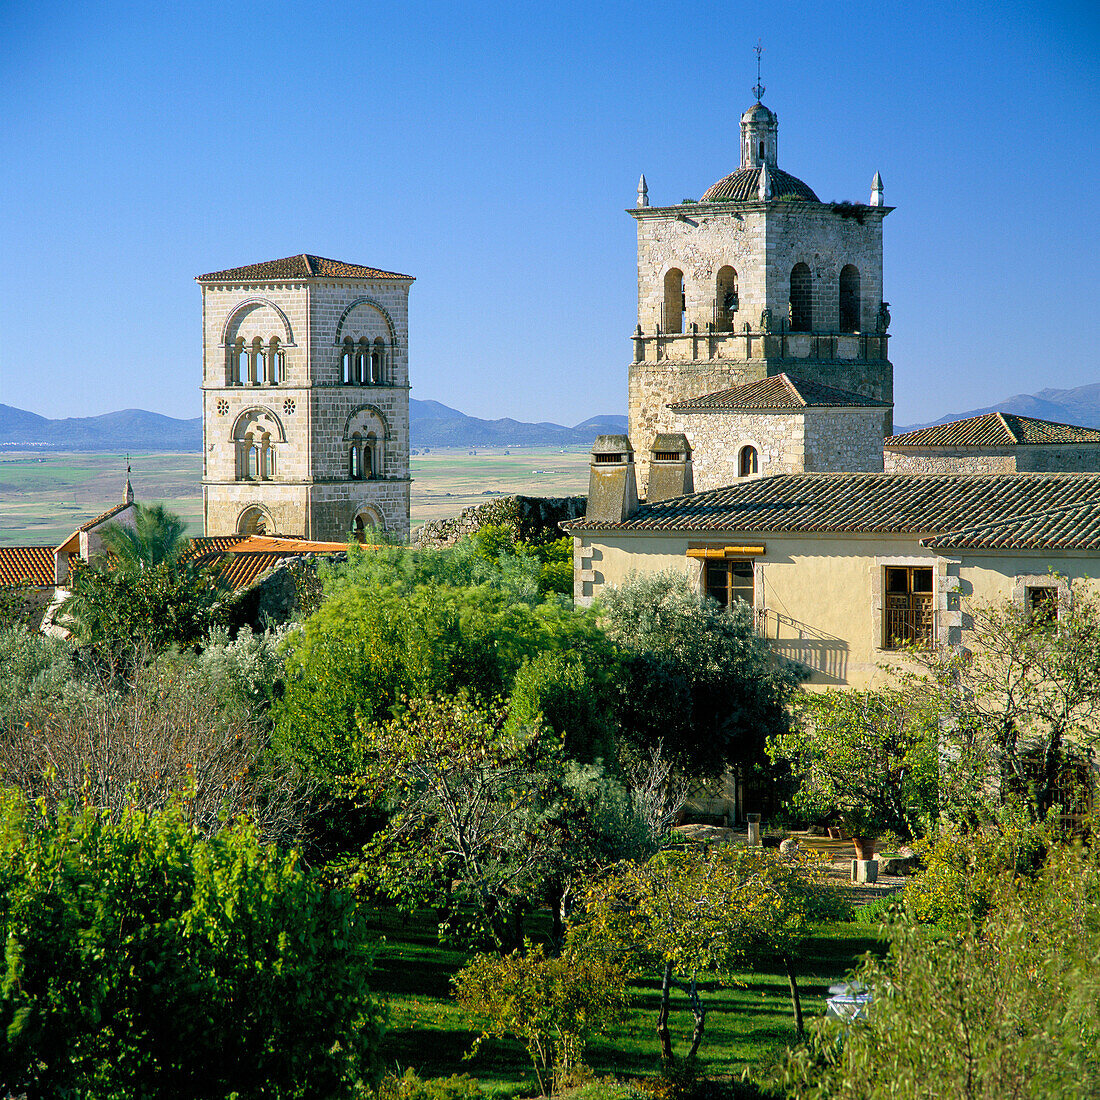 Church of Santa Maria La Mayor, Trujillo, Extremadura, Spain